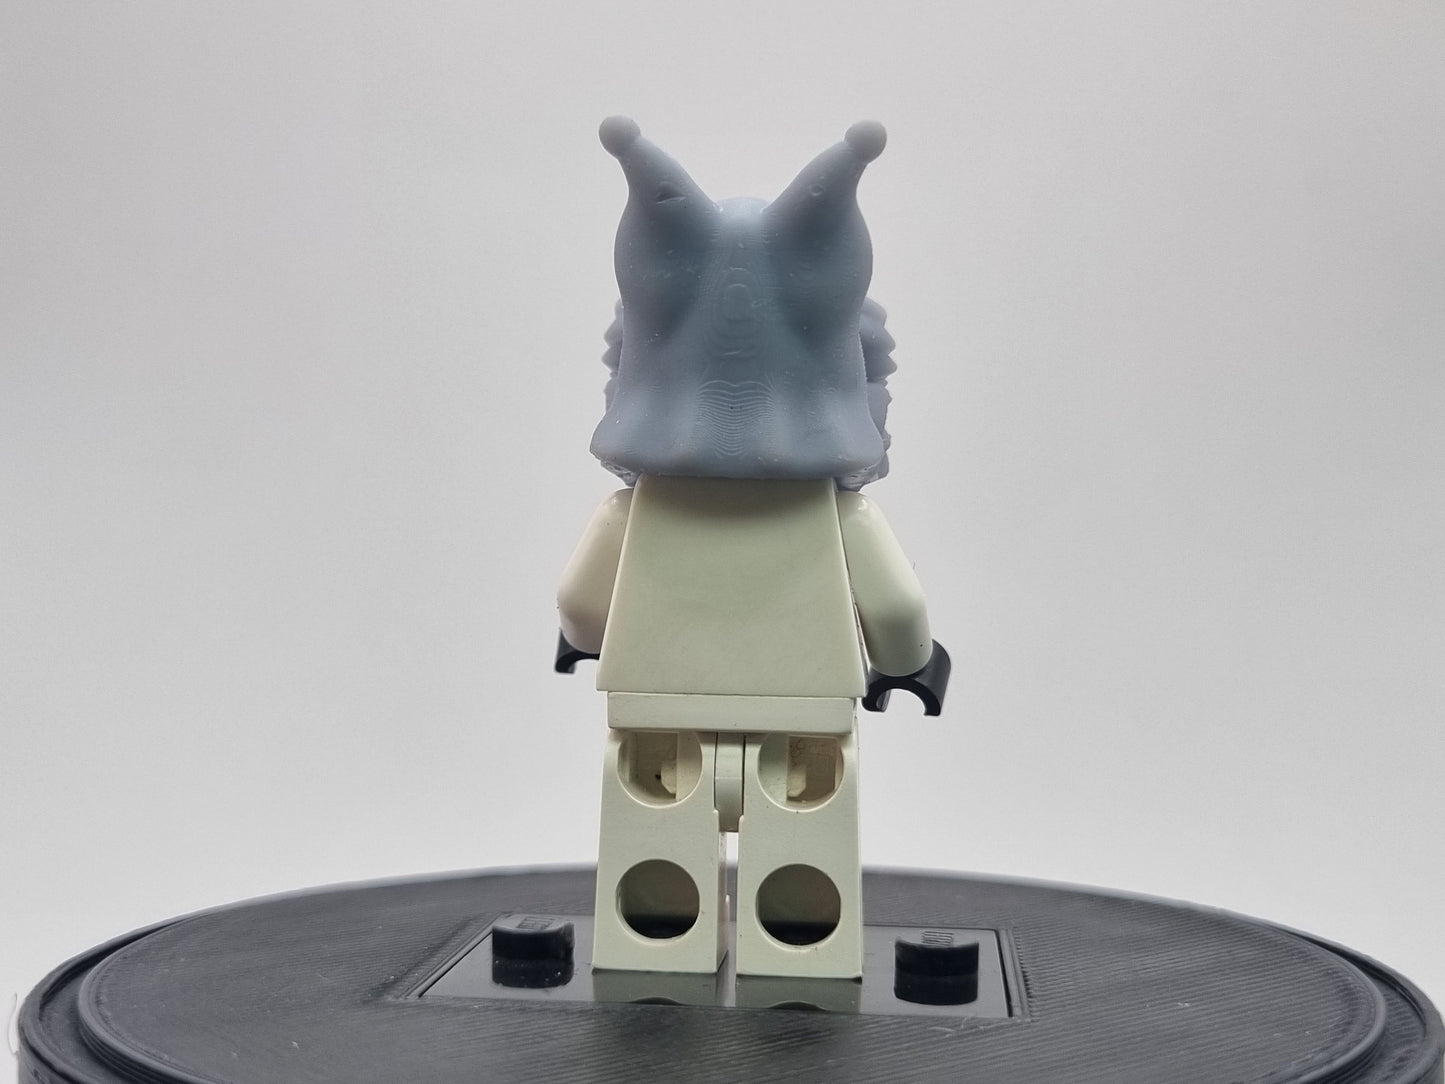 Building toy custom 3D snow hood for learner female alien!